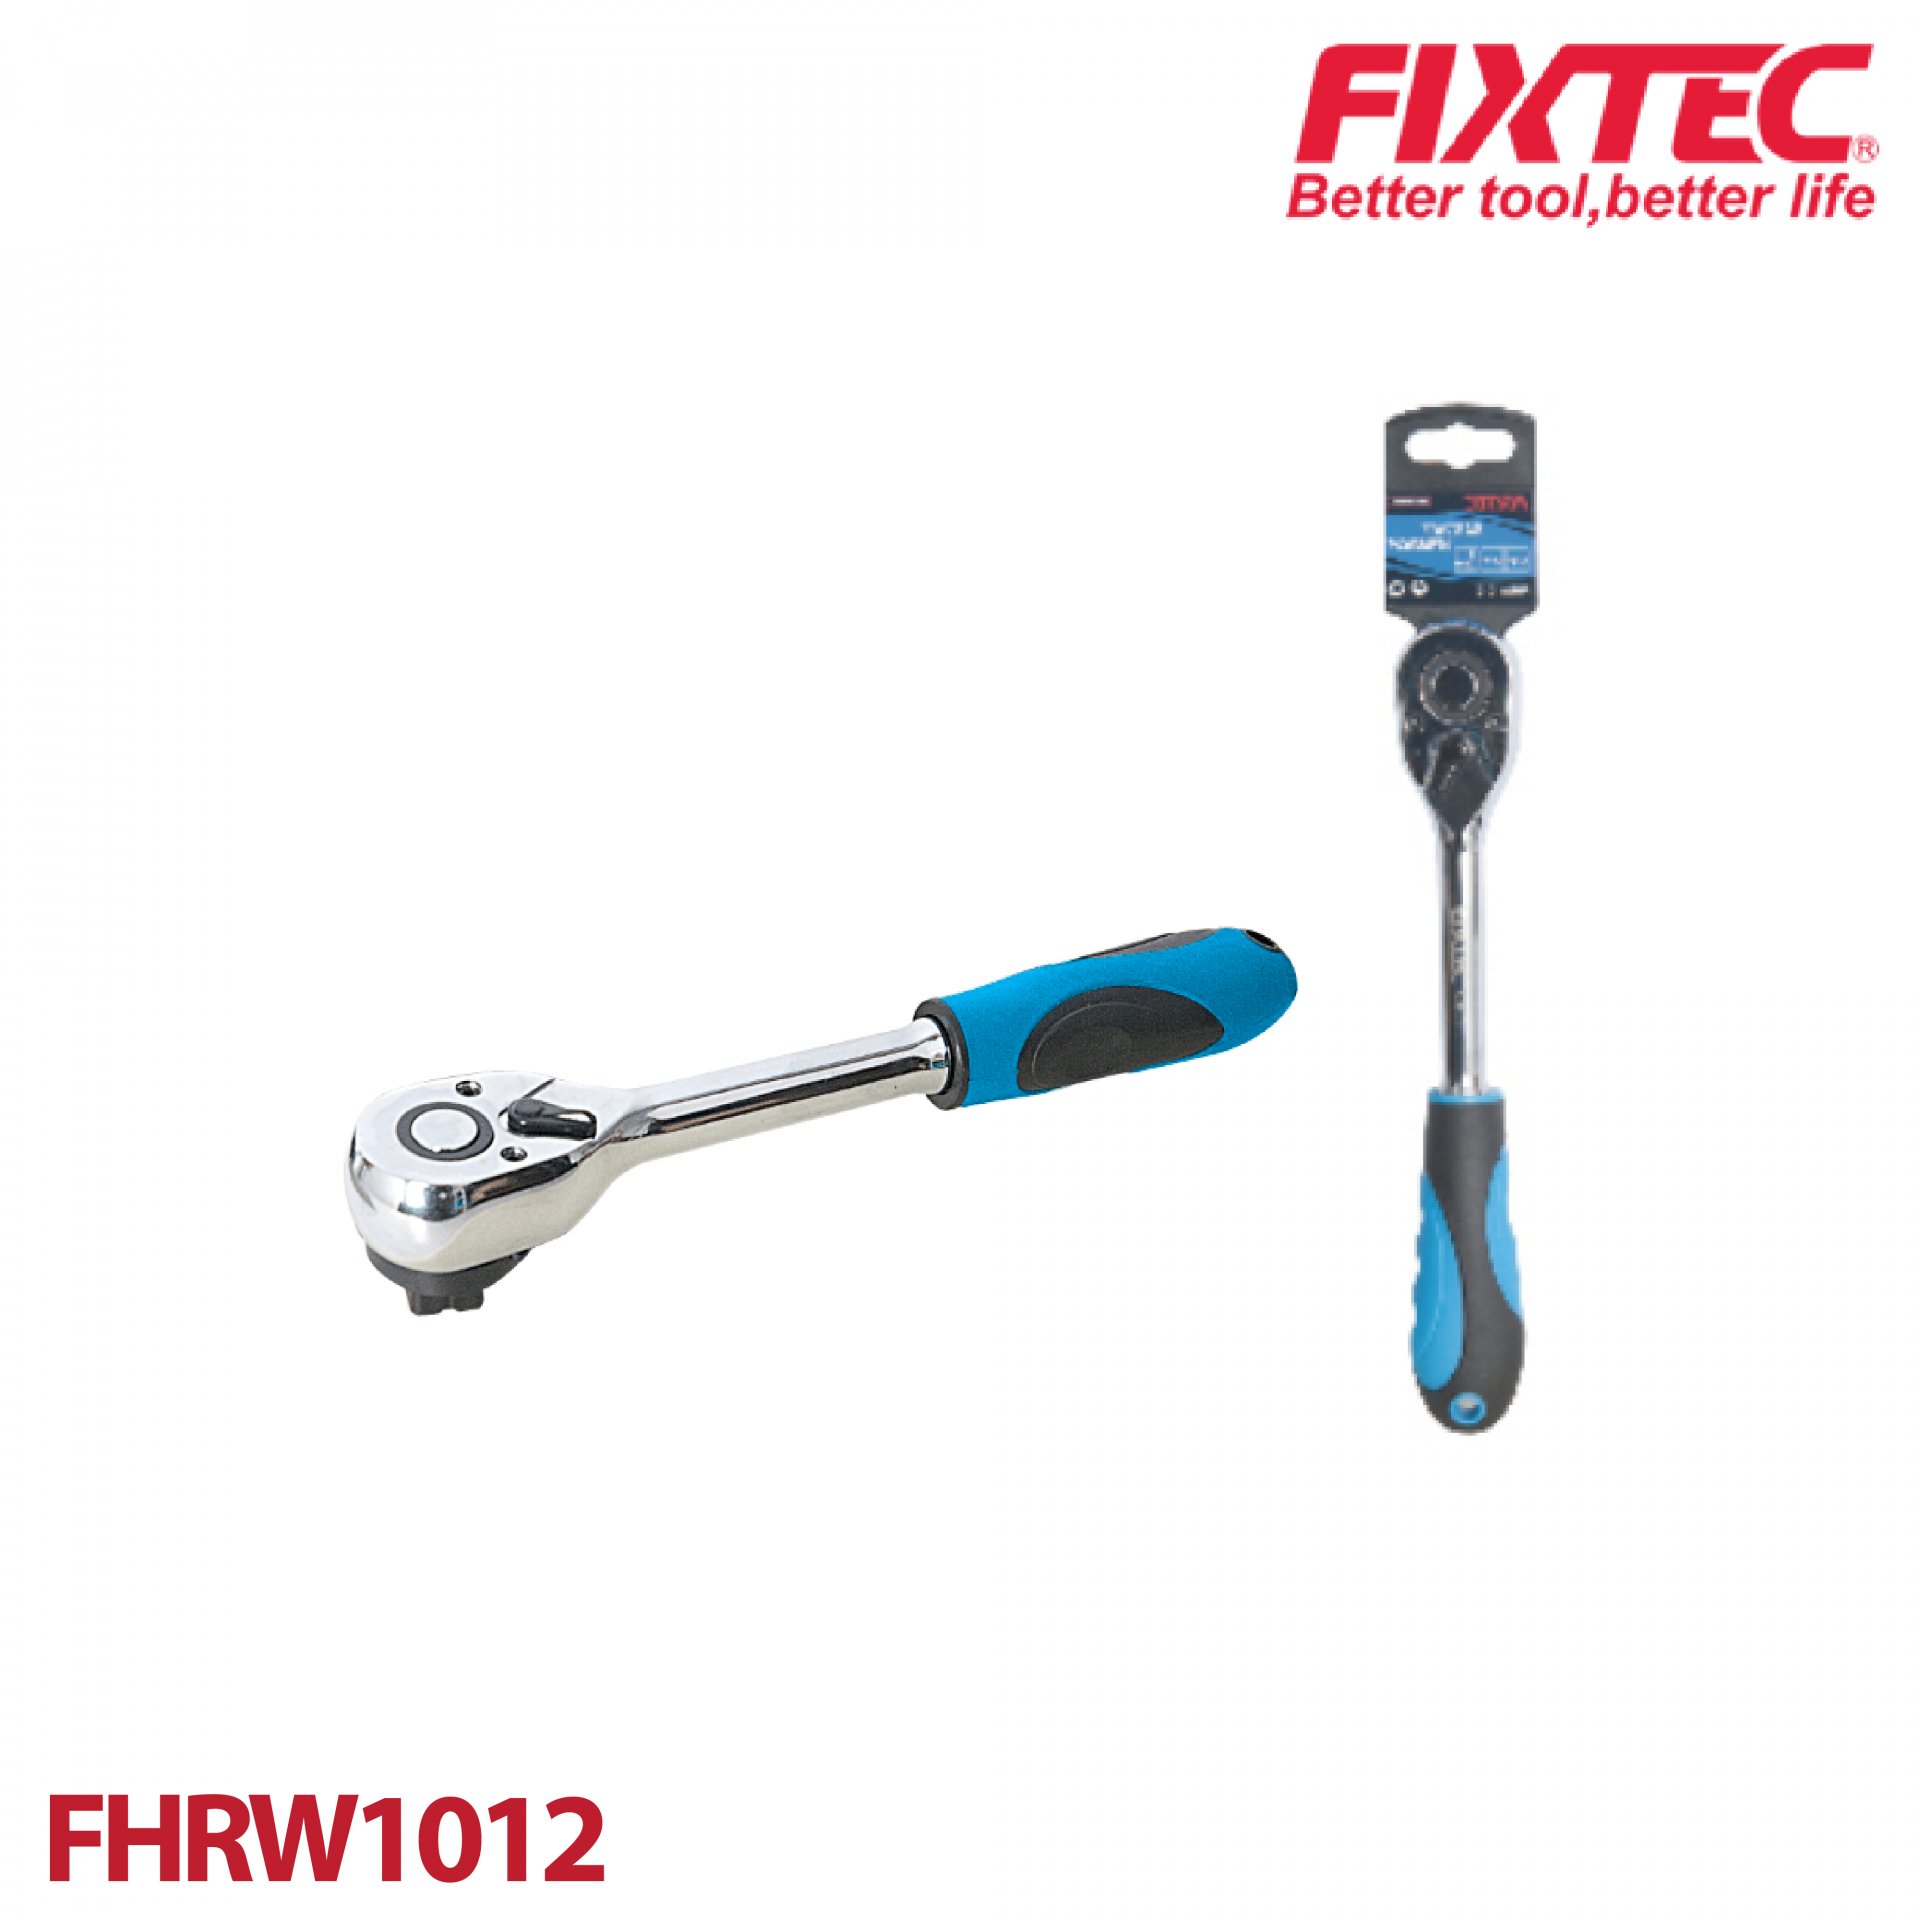 ประแจขันบล็อค 1/2" FIXTEC FHRW1012